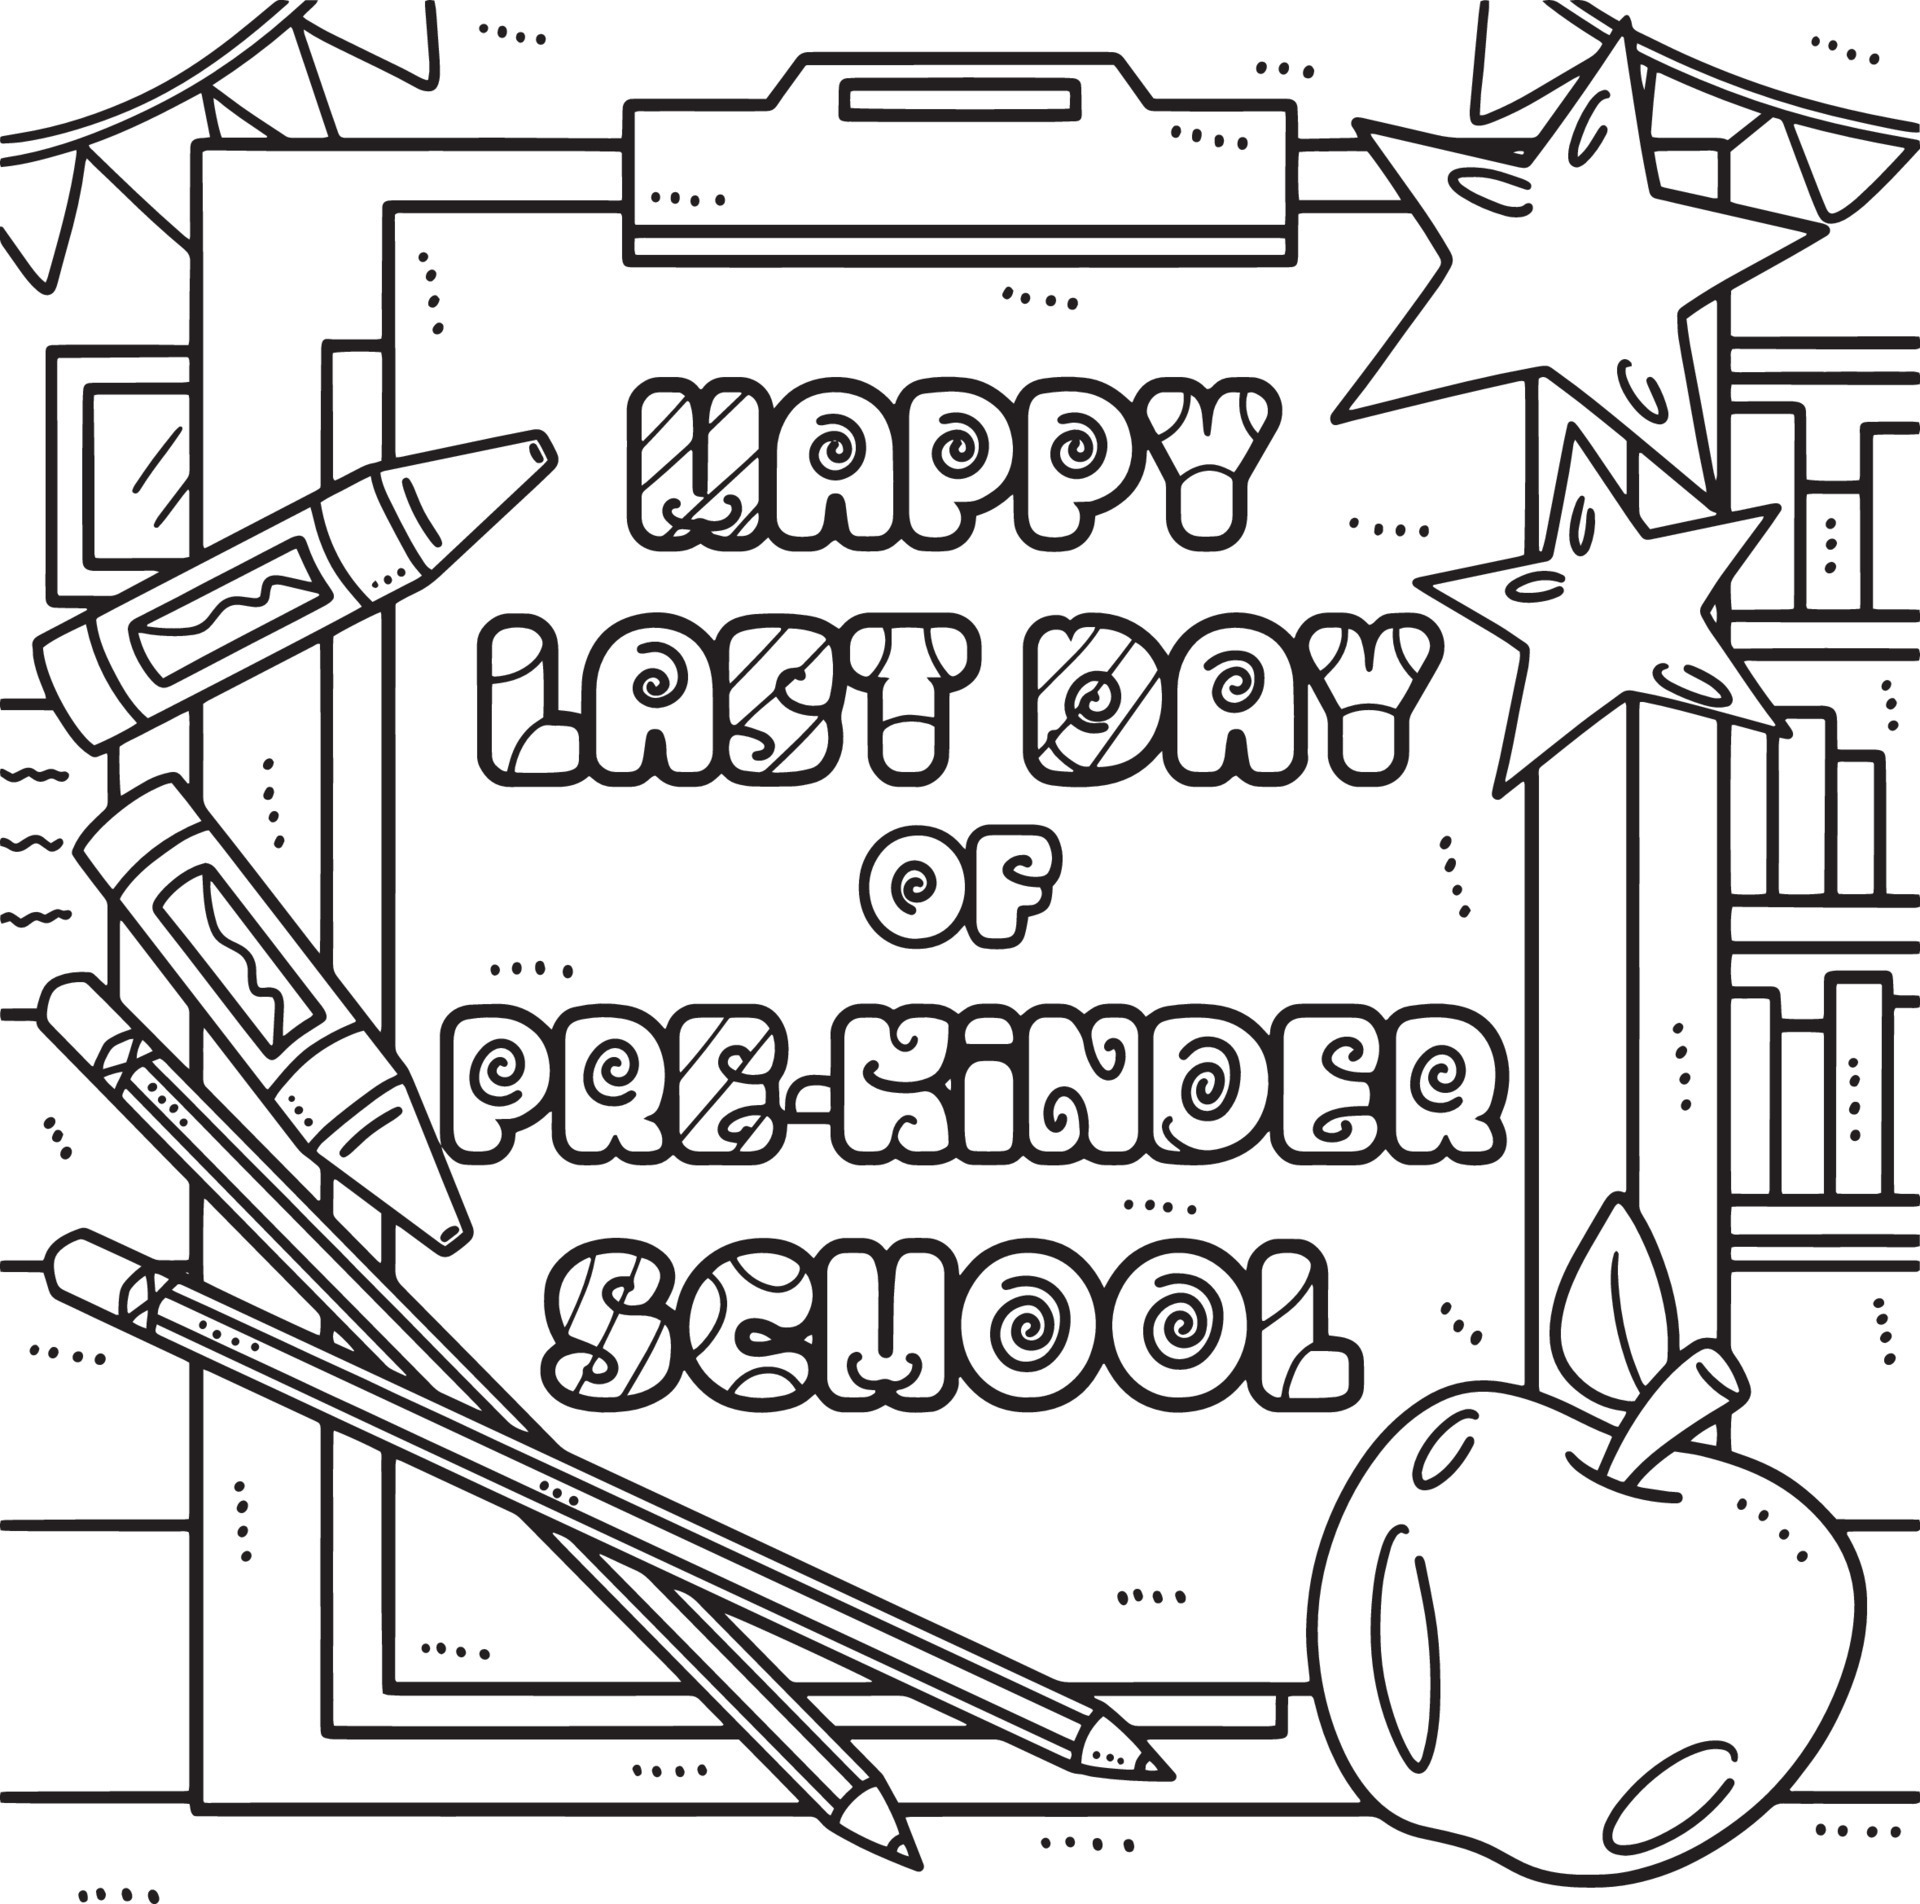 Happy Last Day of Pre K School Coloring Page 21501645 Vector Art at